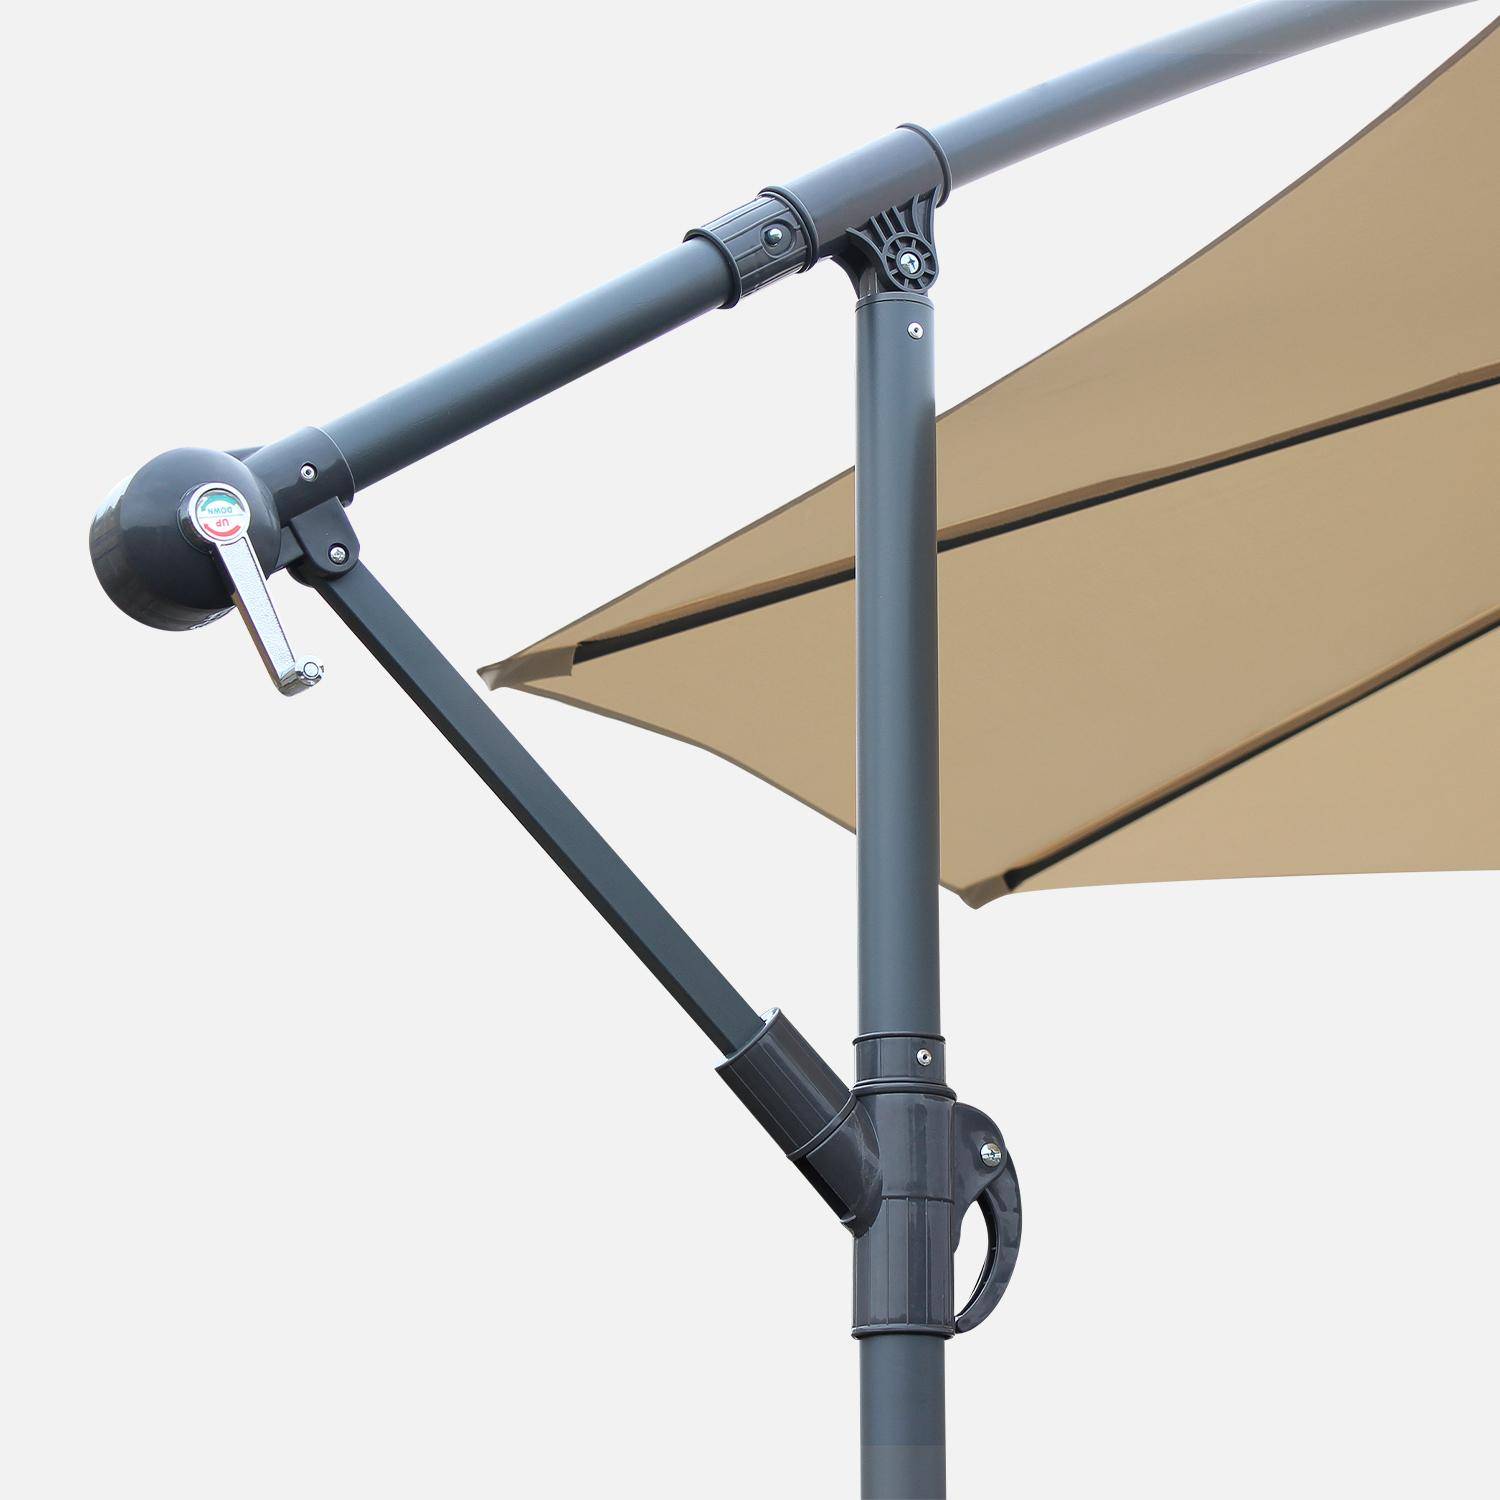 Paraguas redondo 3x3m - Hardelot - Beige - Manivela antirretorno | Tejido impermeable | Fácil de usar Photo4